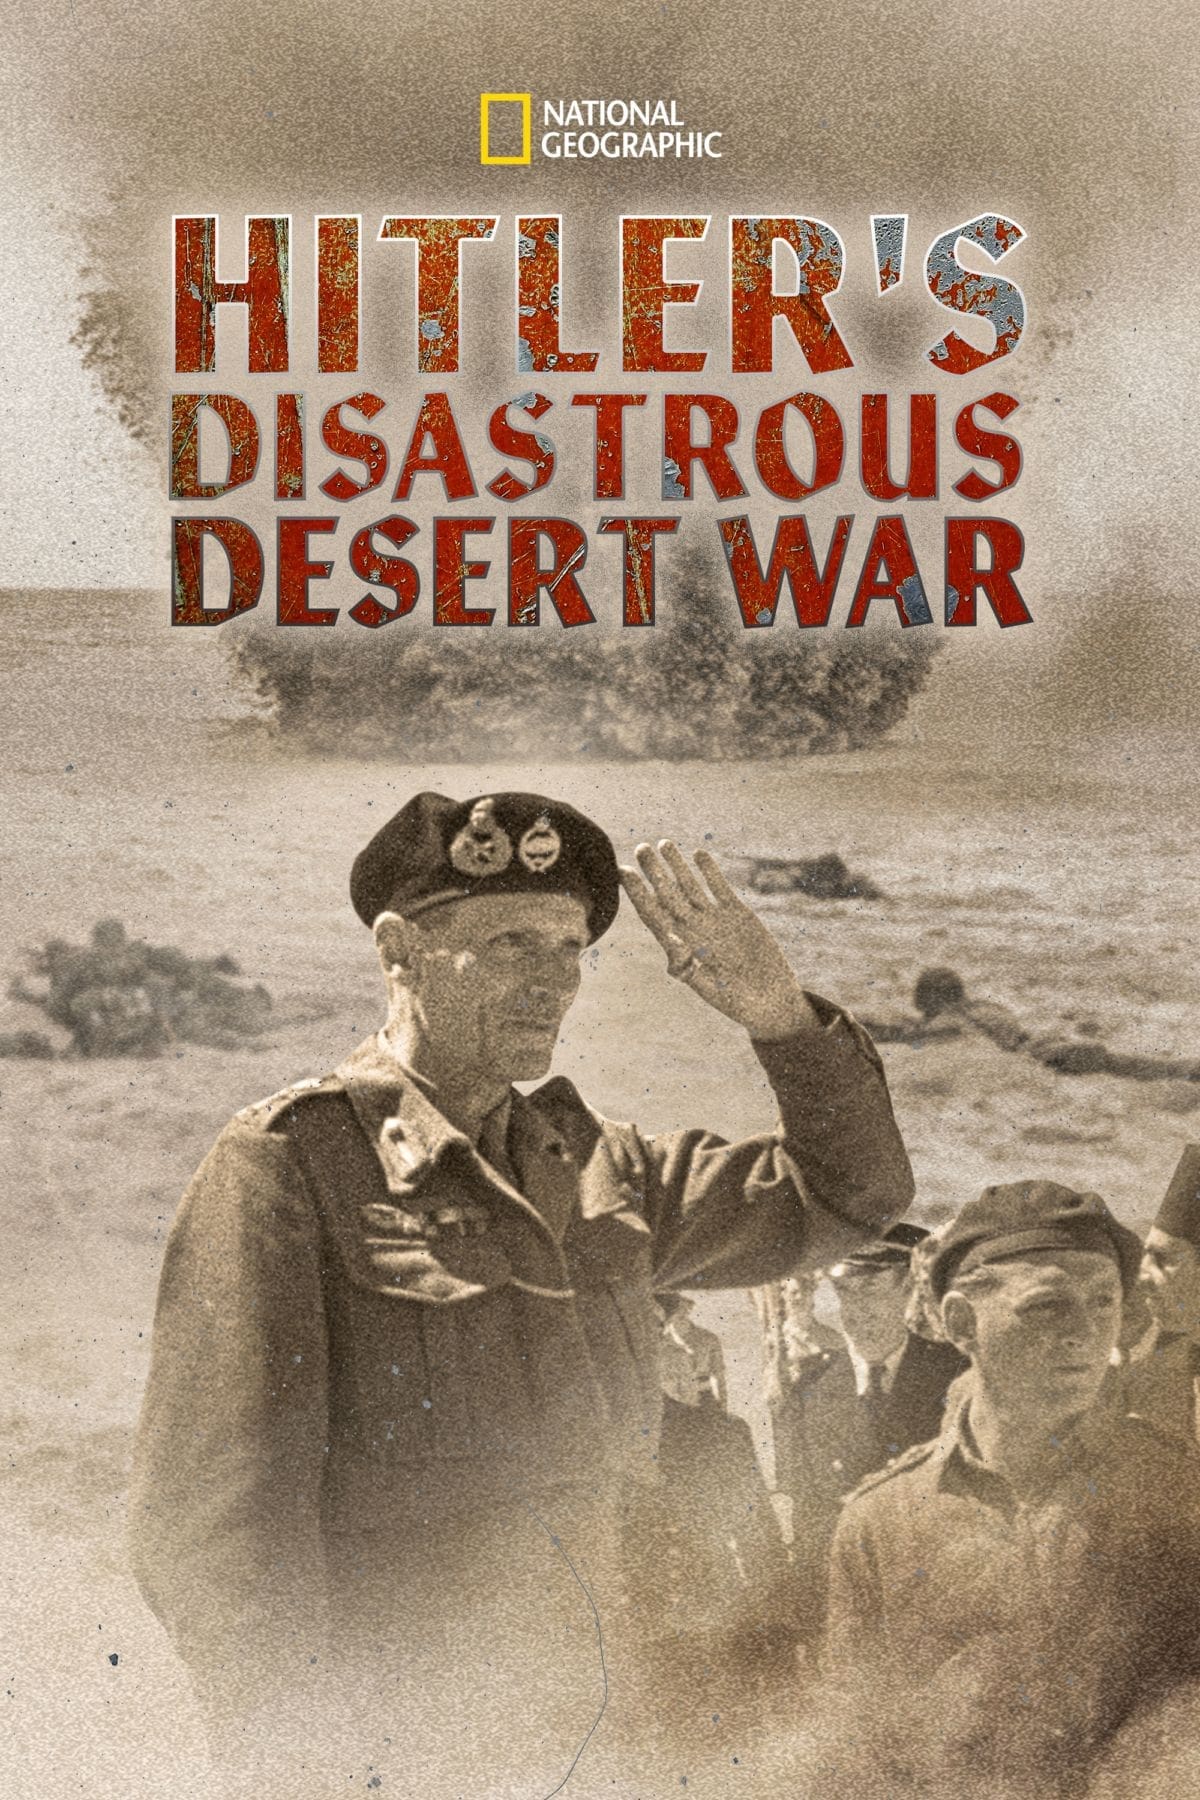 La desastrosa Guerra del desierto de Hitler